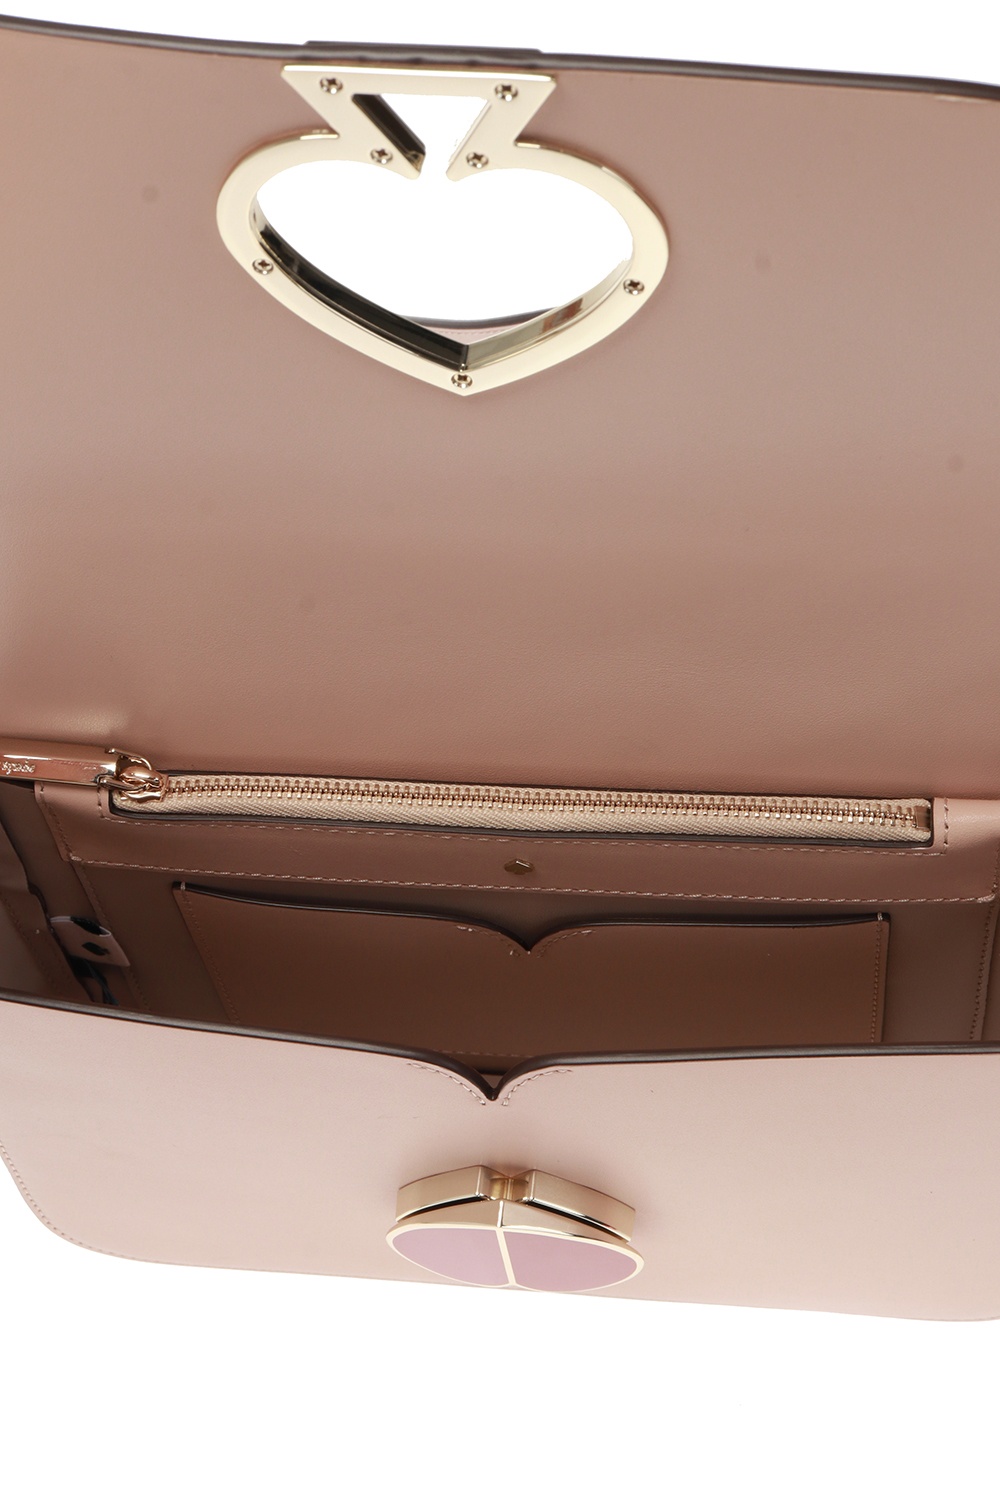 Kate Spade Nicola Twistlock Medium Pink Leather Shoulder Bag